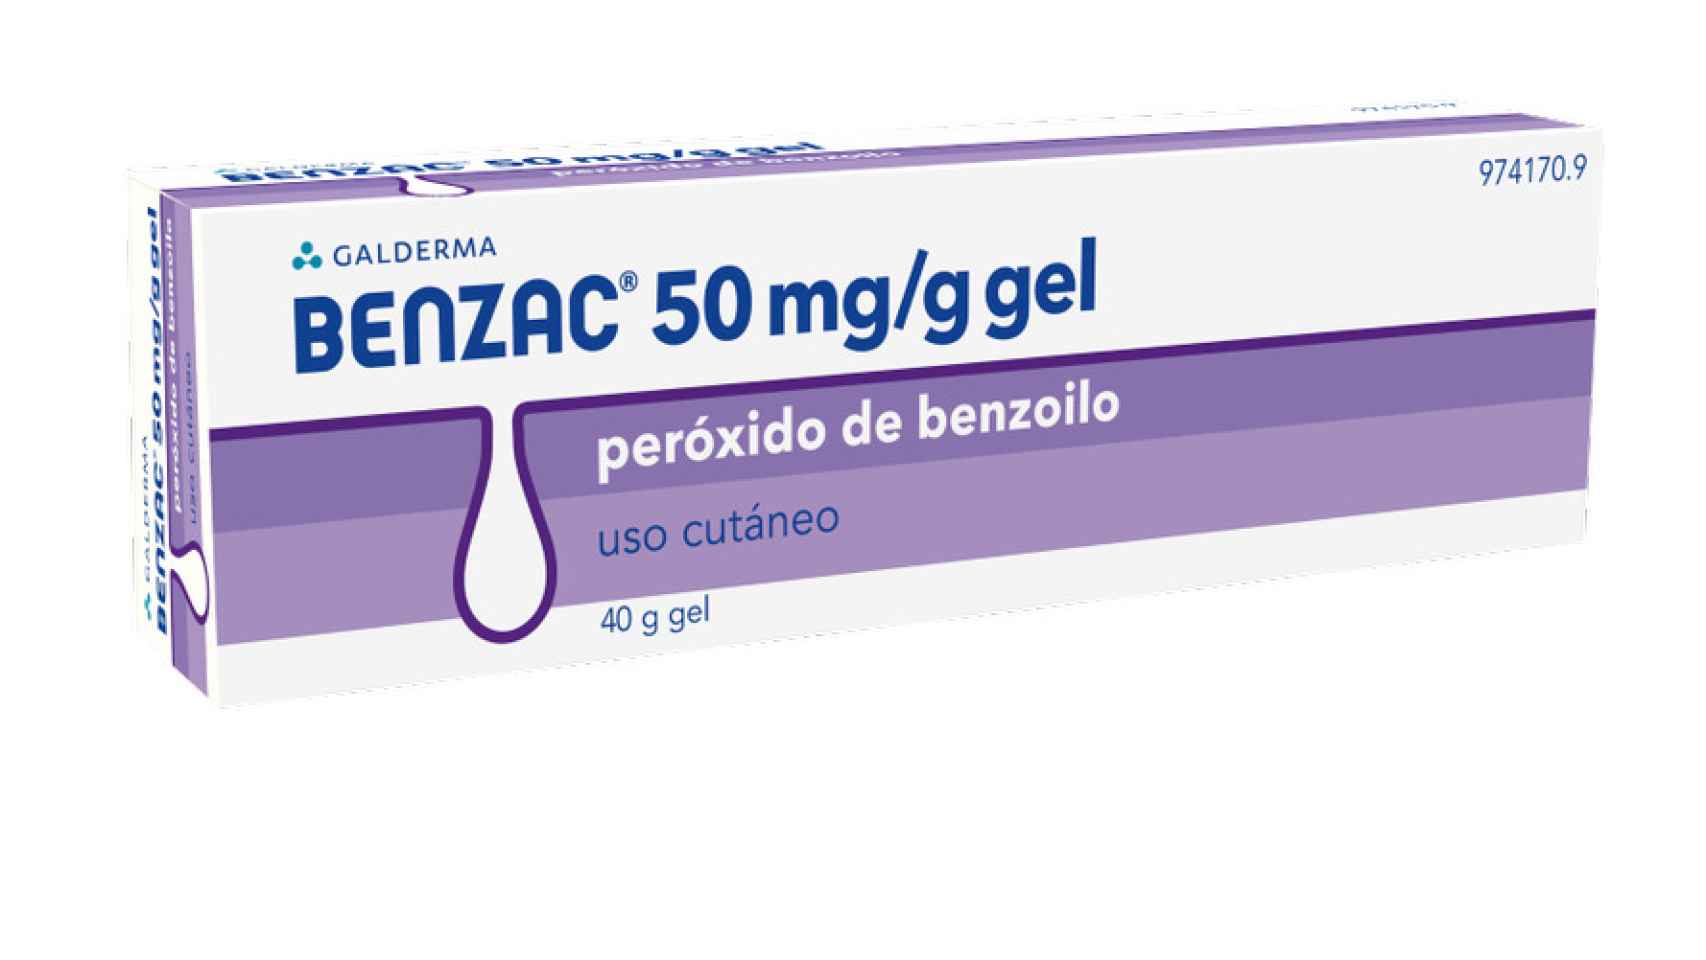 La nueva marca se llama Benzac y está indicada para el tratamiento del acné.